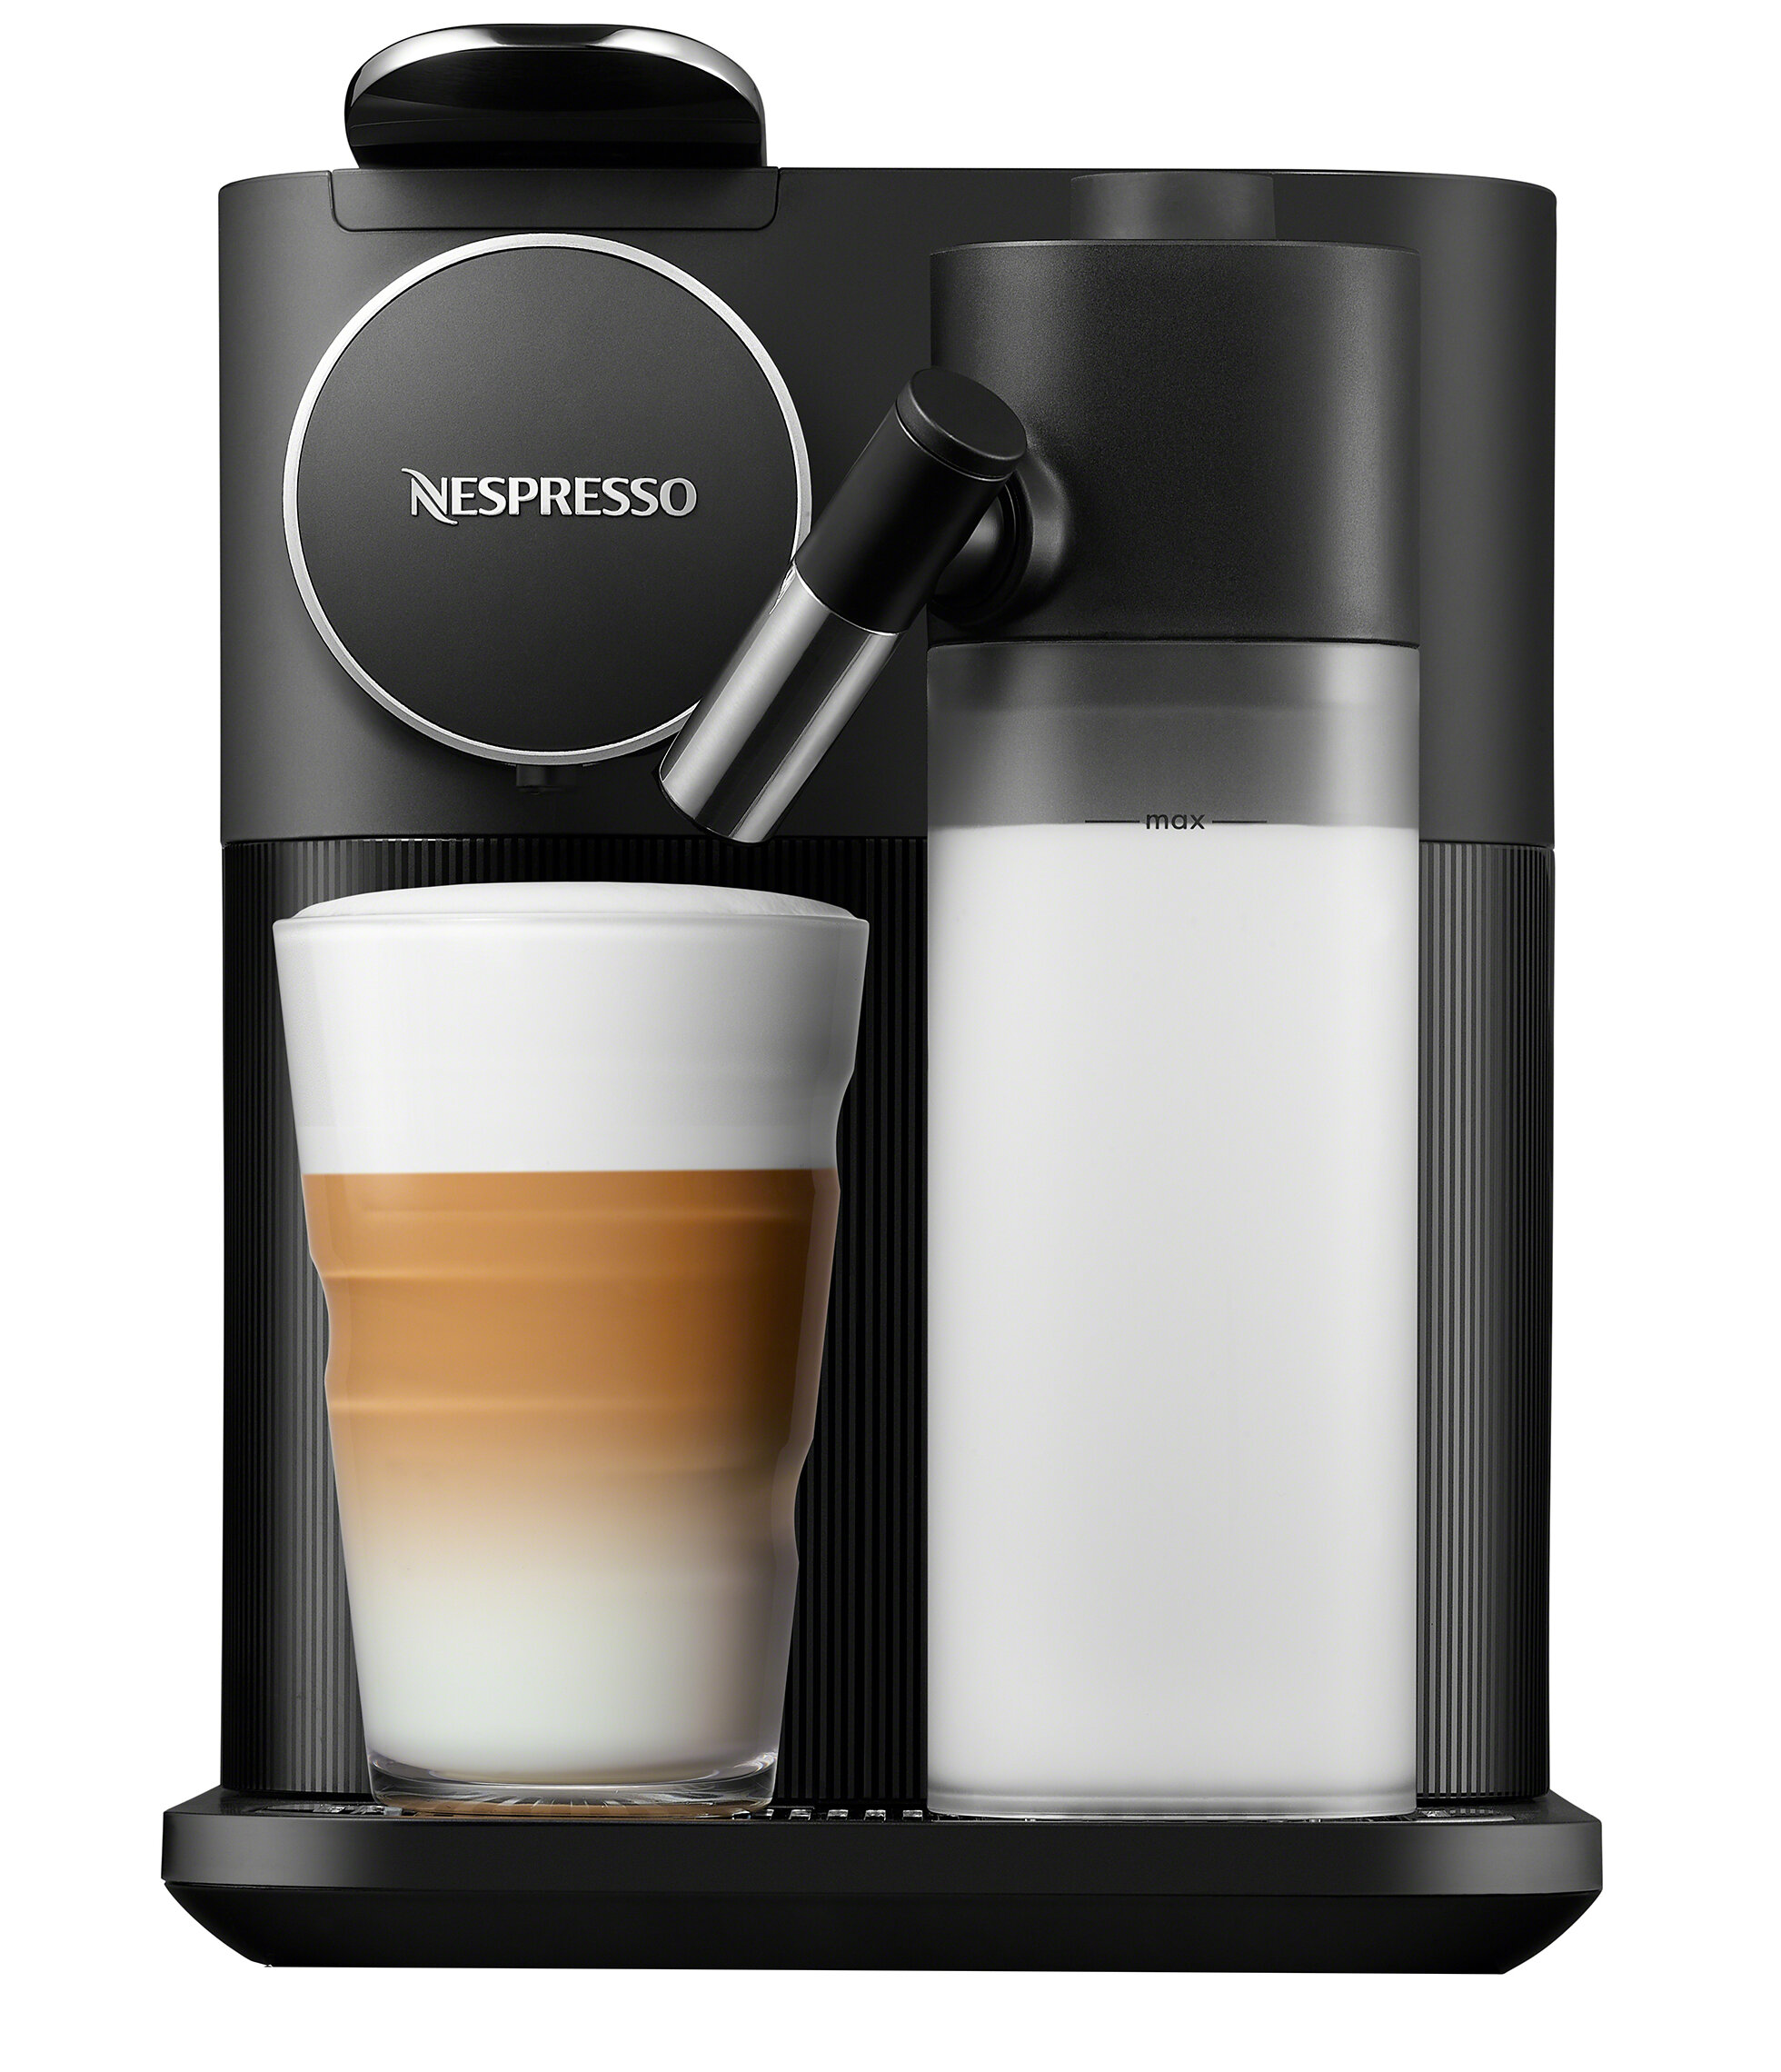 Nespresso Lattissima Original Coffee and Espresso Machine with Milk Frother  by De'Longhi